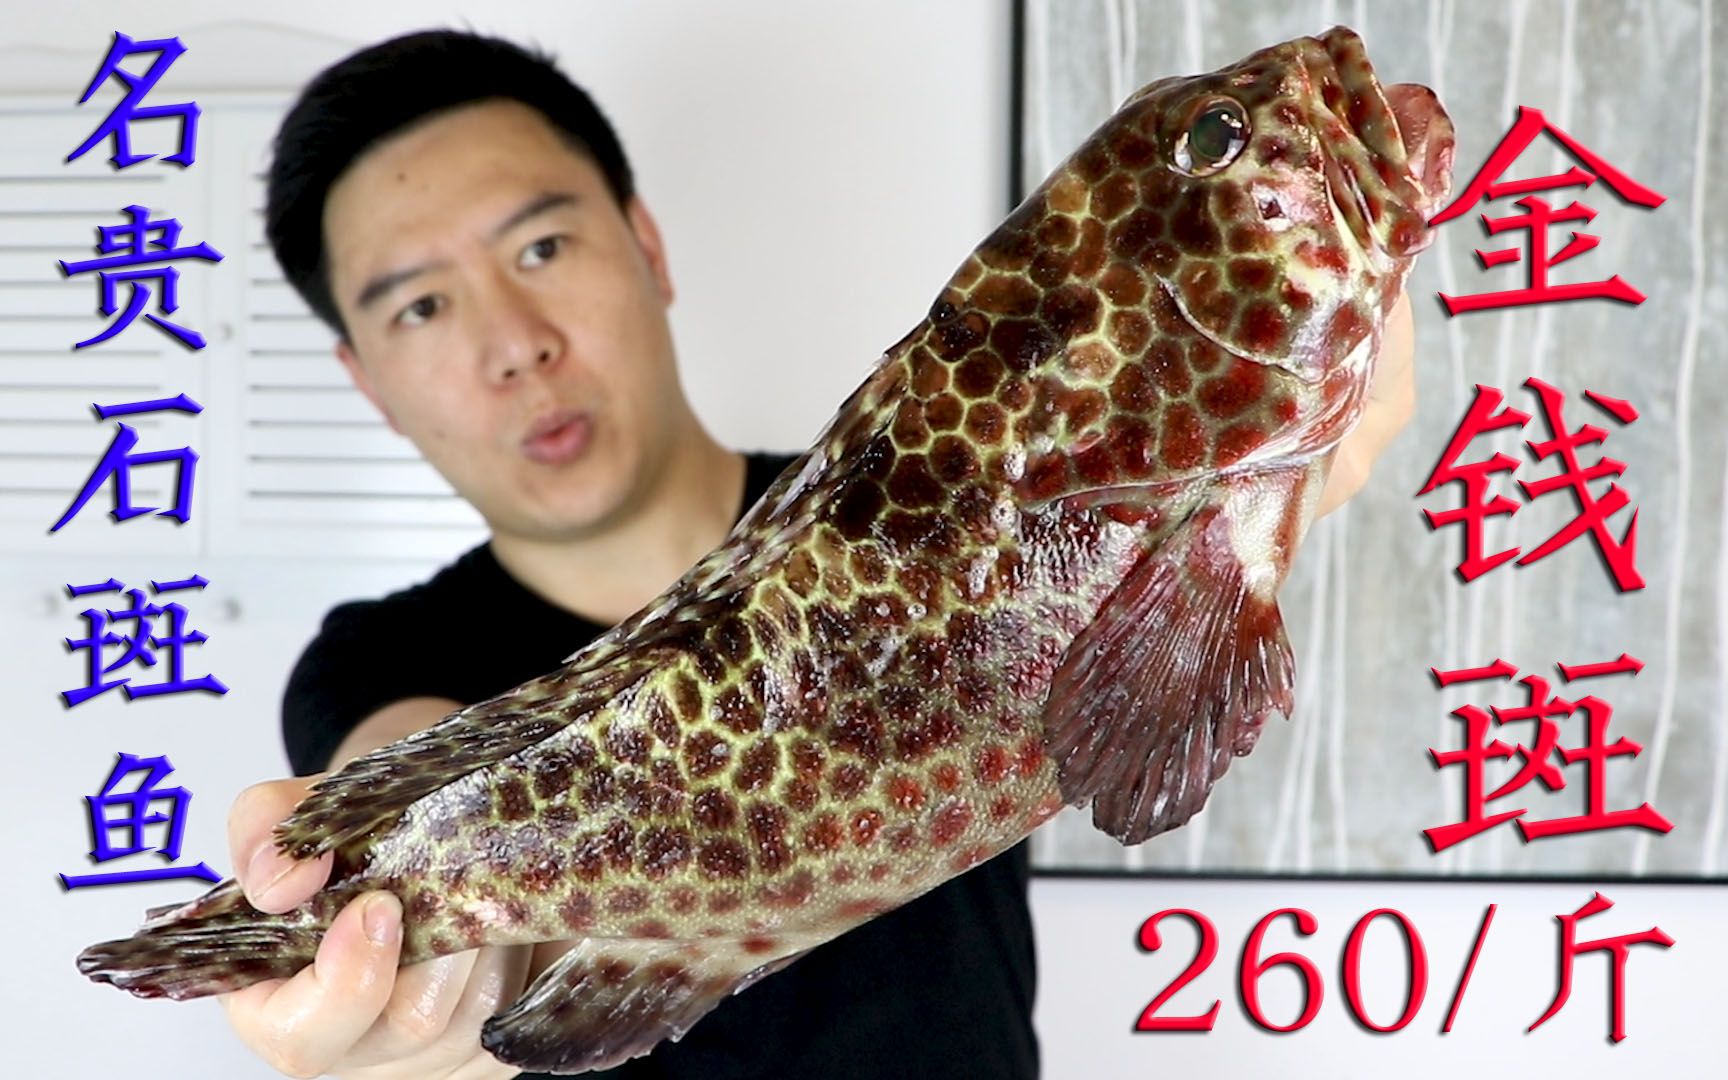 活动  650元买一条名贵石斑鱼金钱斑,肉质雪白细嫩,是鱼中的上品